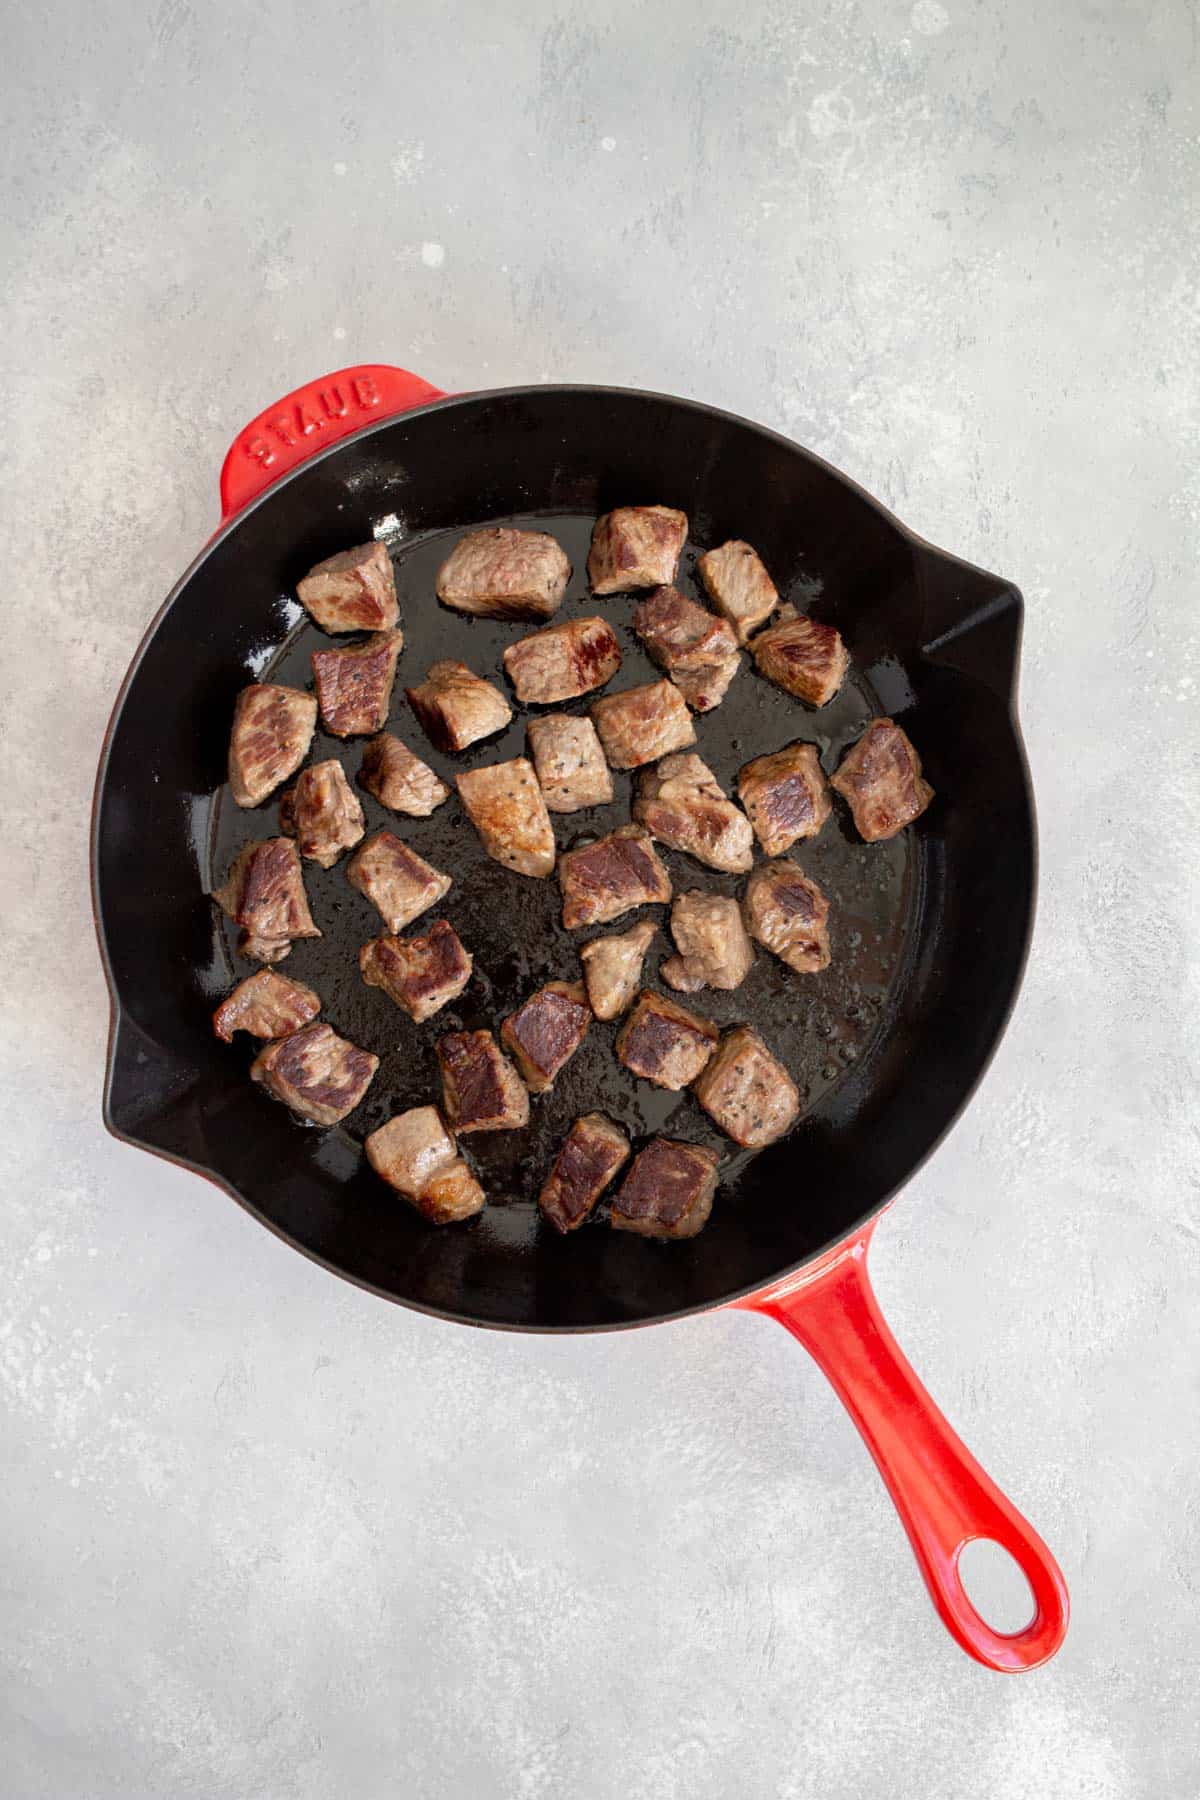 Seared steak cubes in a cast iron.